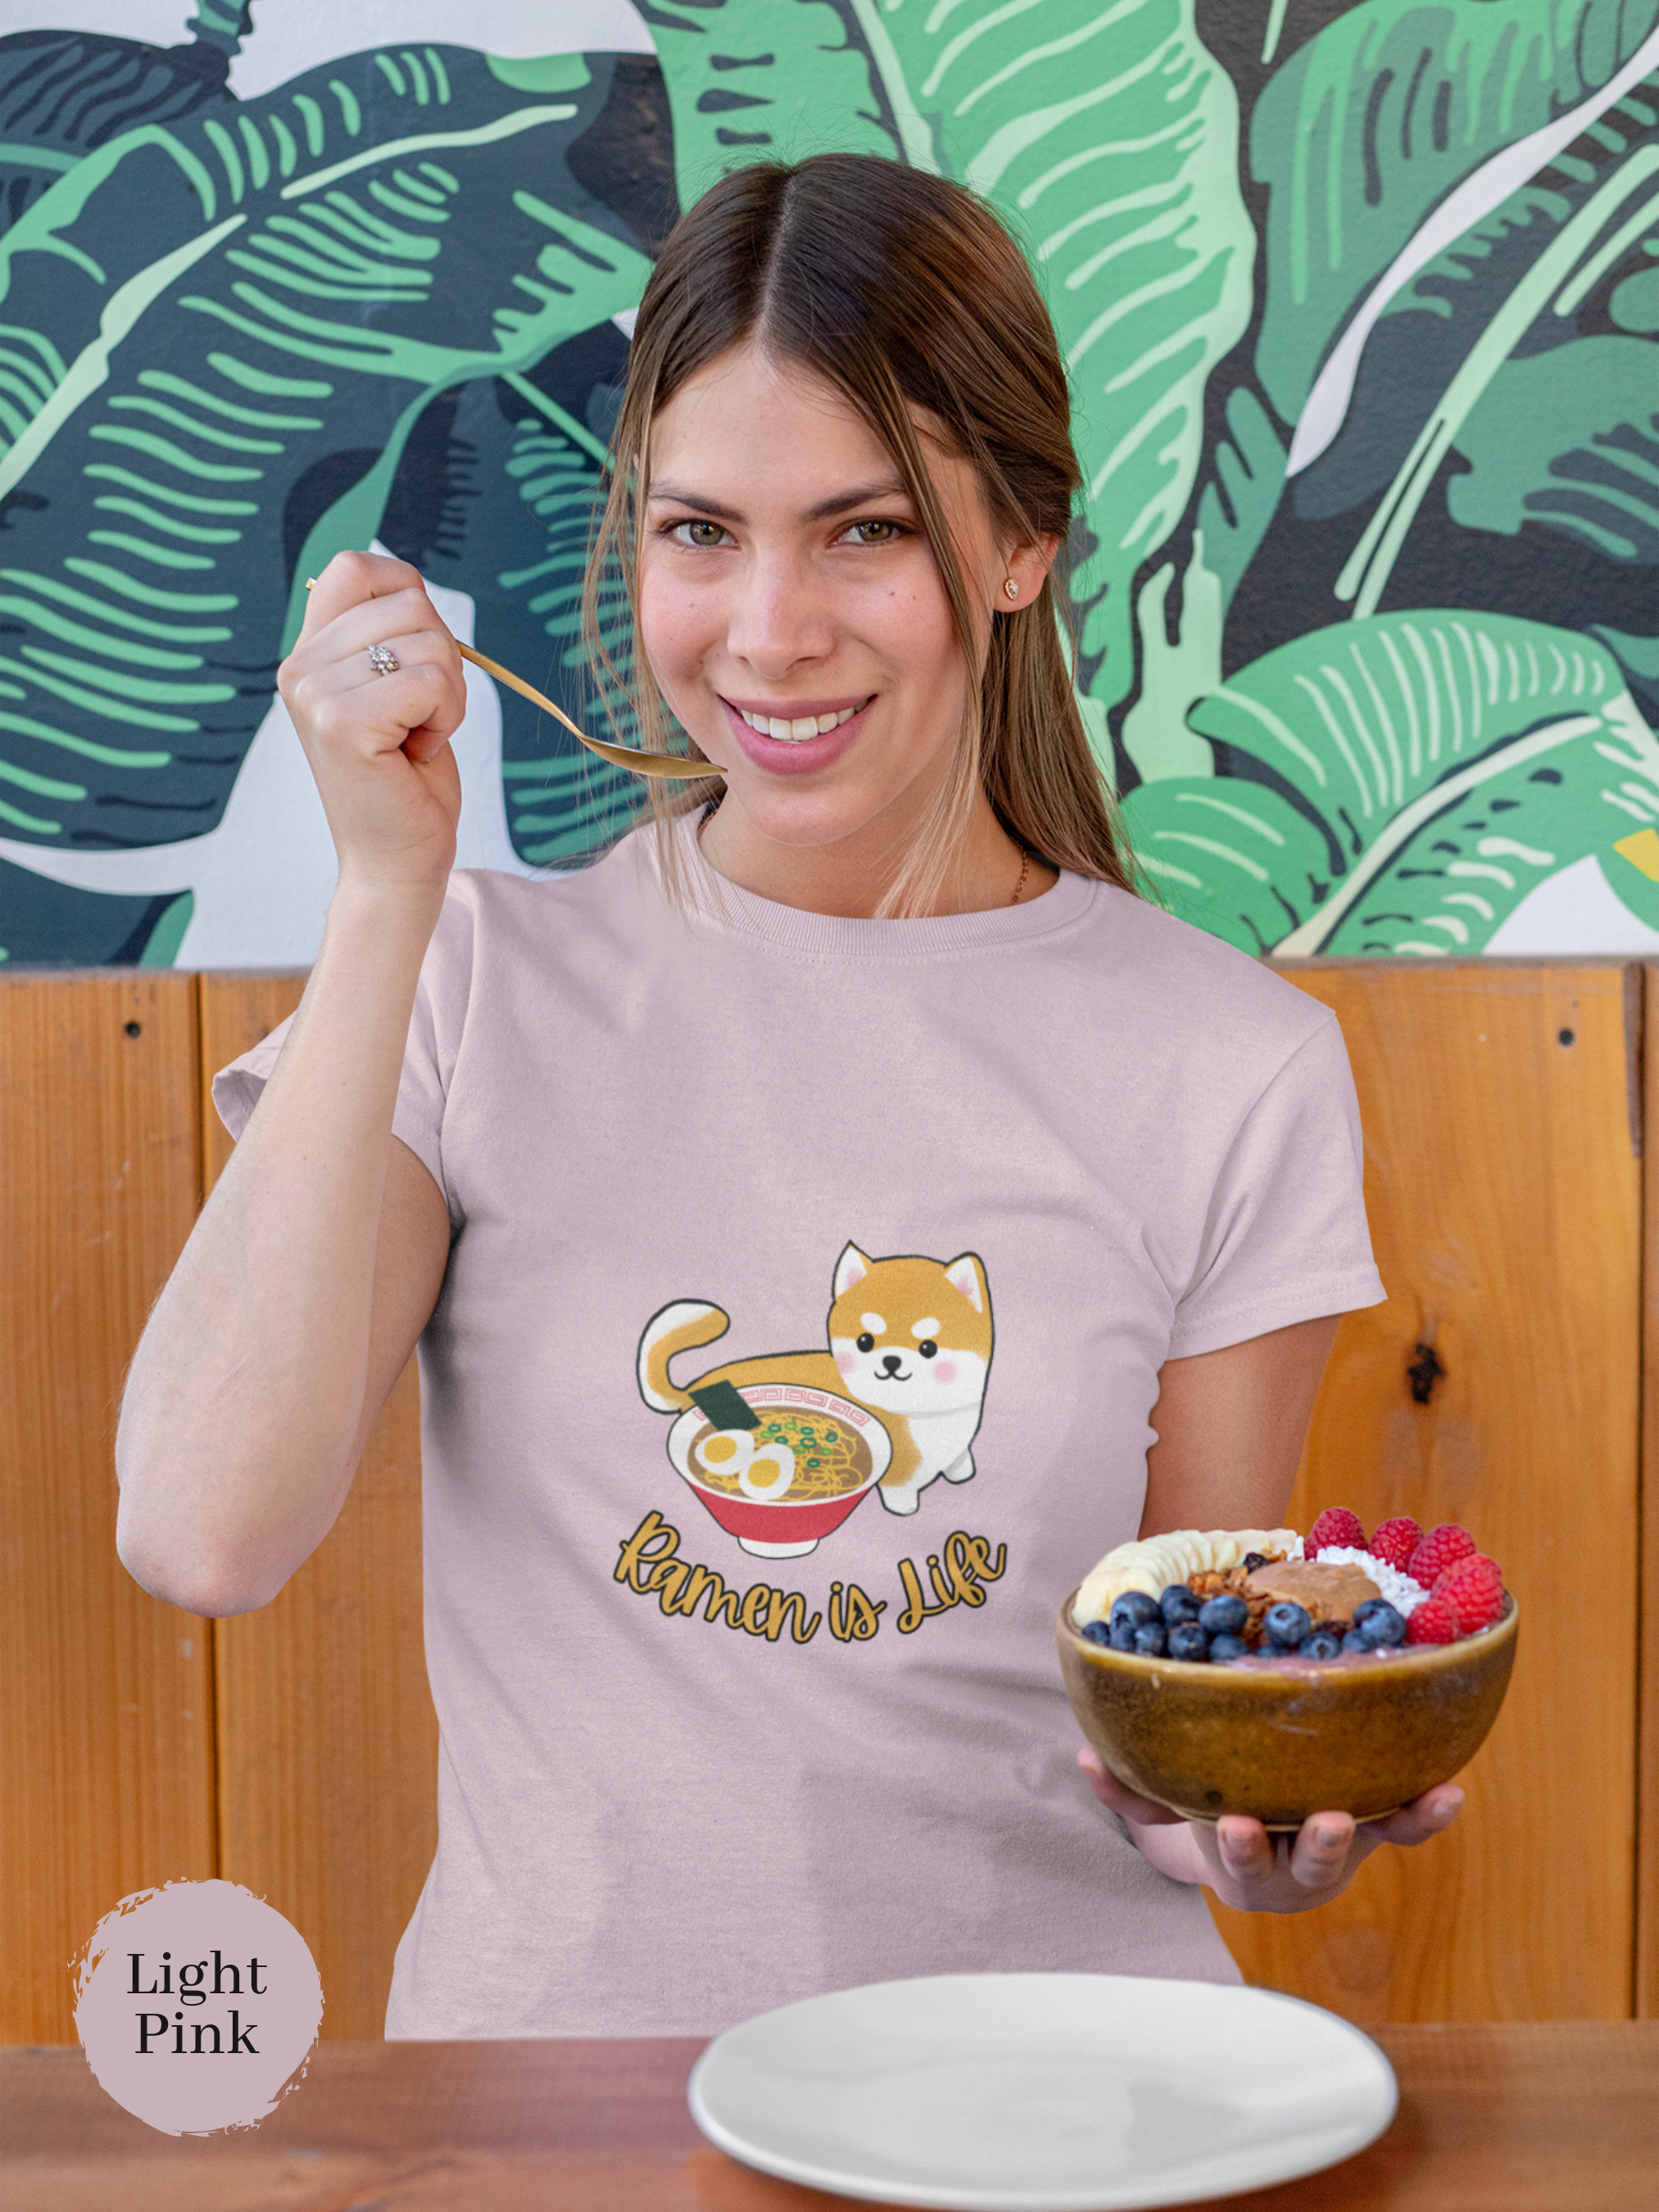 Ramen T-Shirt: Japanese Foodie Shirt with Cute Shiba Inu Beside Ramen Bowl - Ramen is Life Art Print